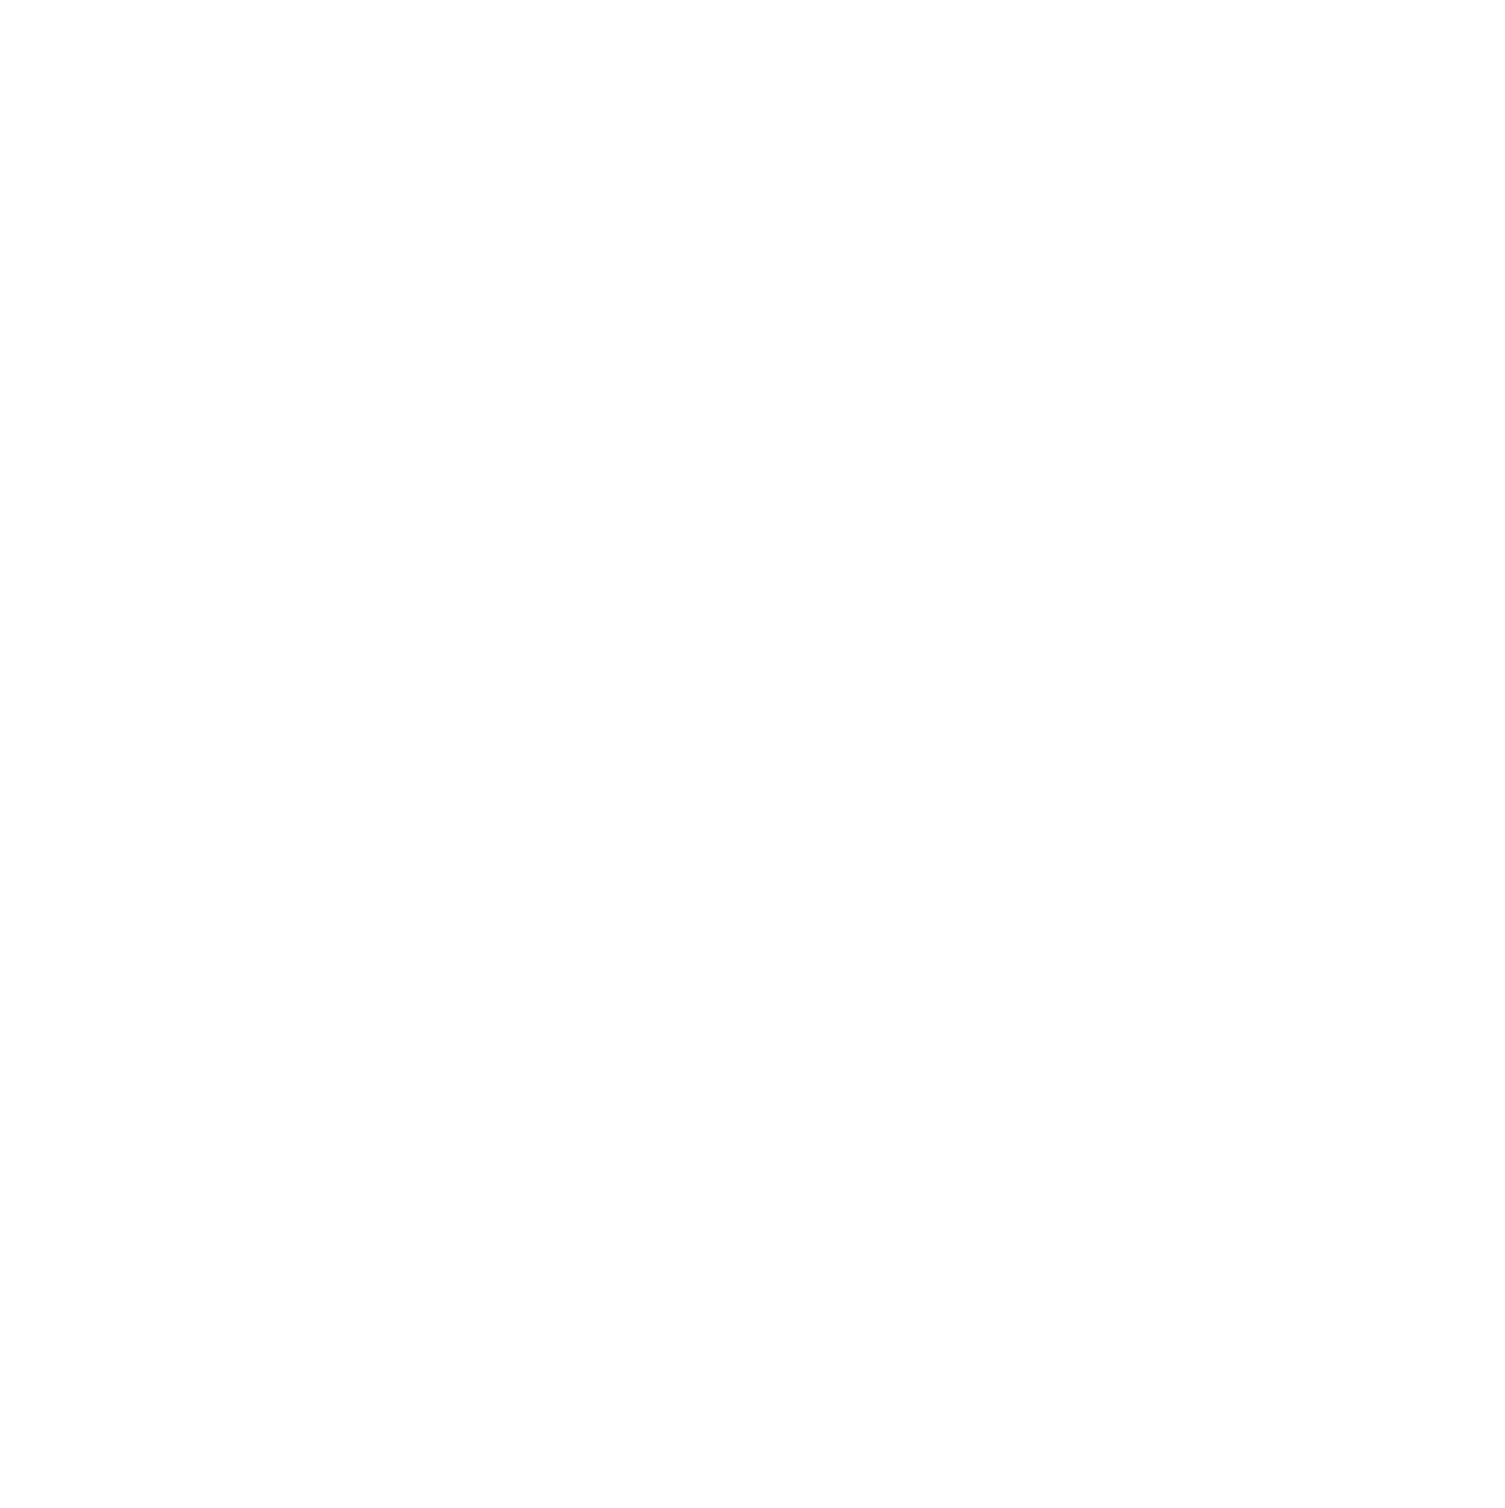 Castellum logo pour fonds sombres (PNG transparent)